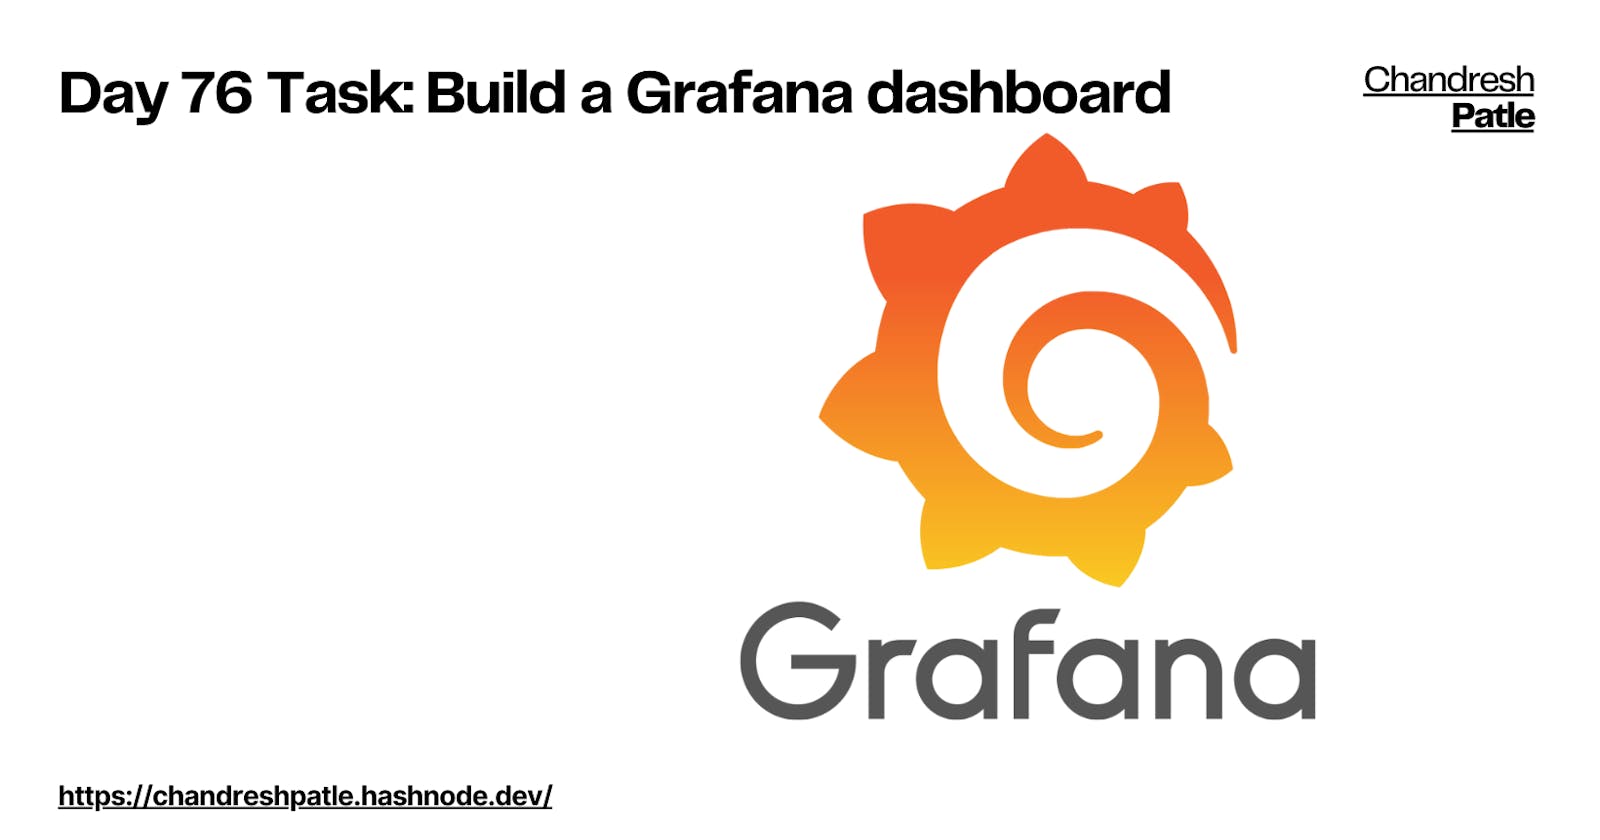 Day 76 Task: Build a Grafana dashboard